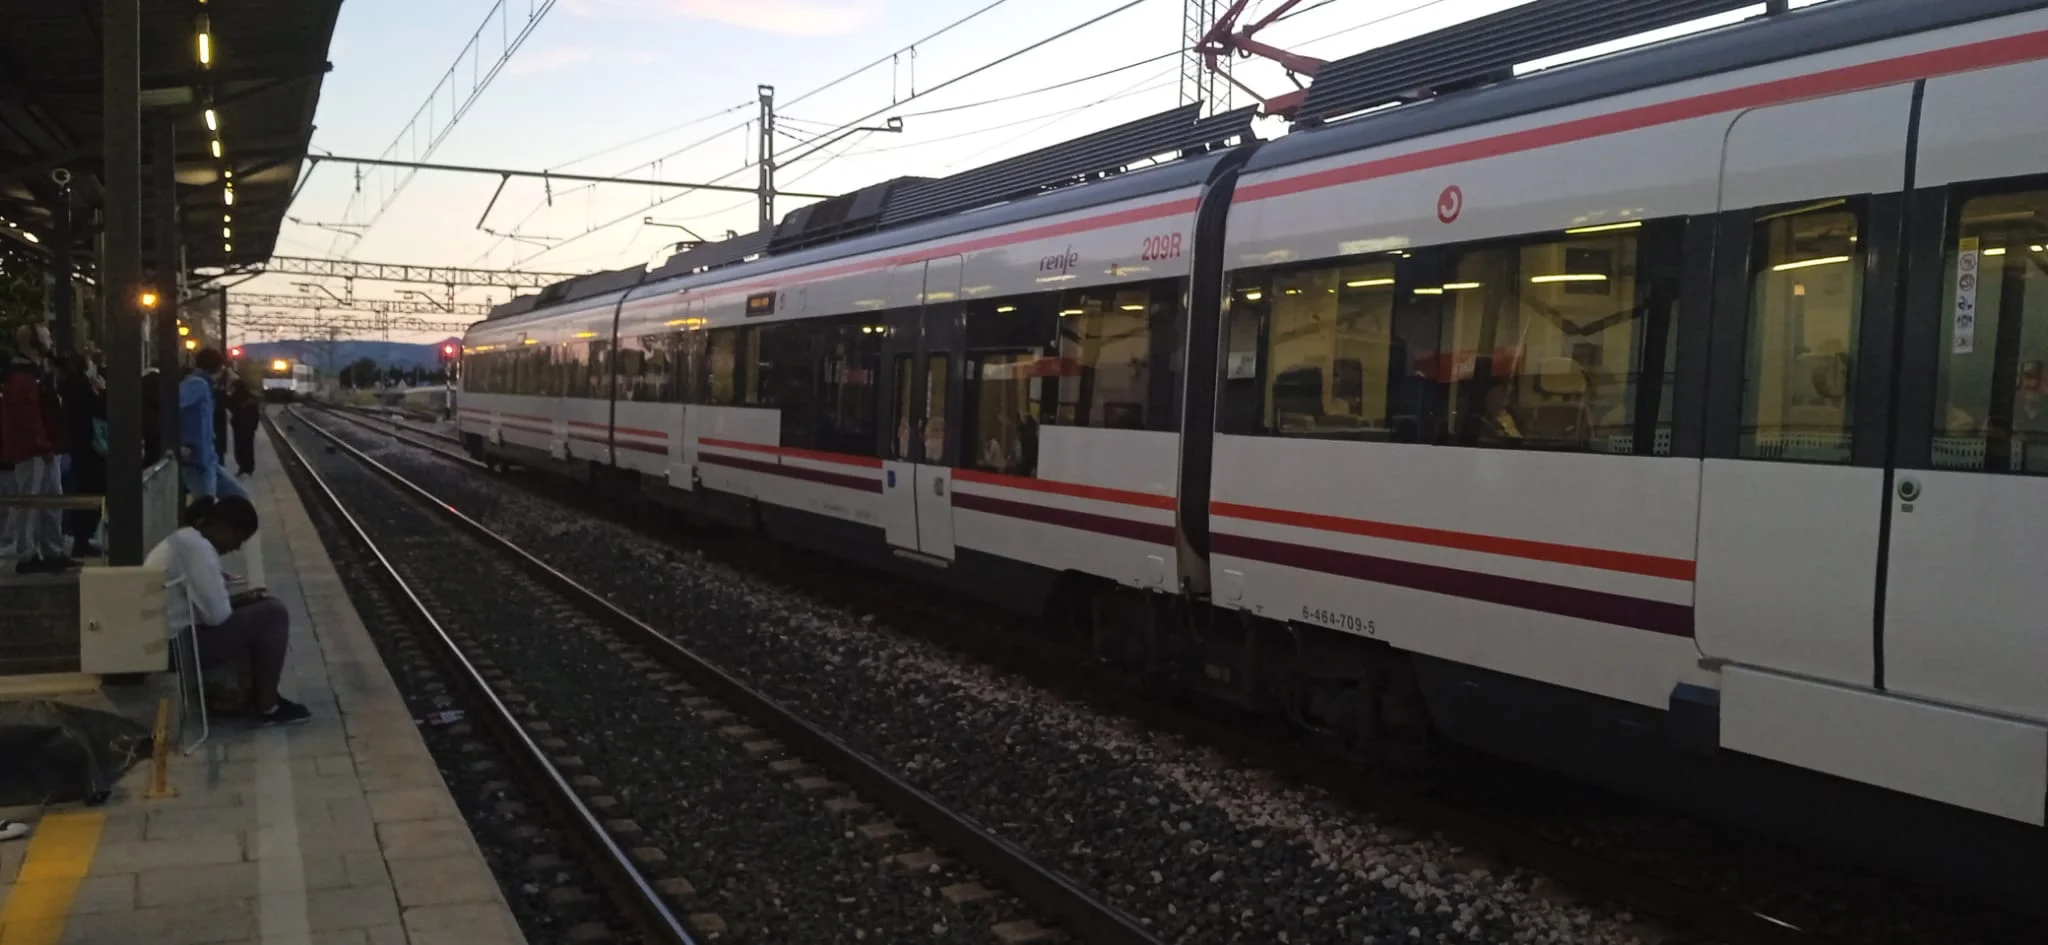 10 trenes menos al día en la línea de Cercanías de Valencia a Gandía. Consulta las obras y los nuevos horarios